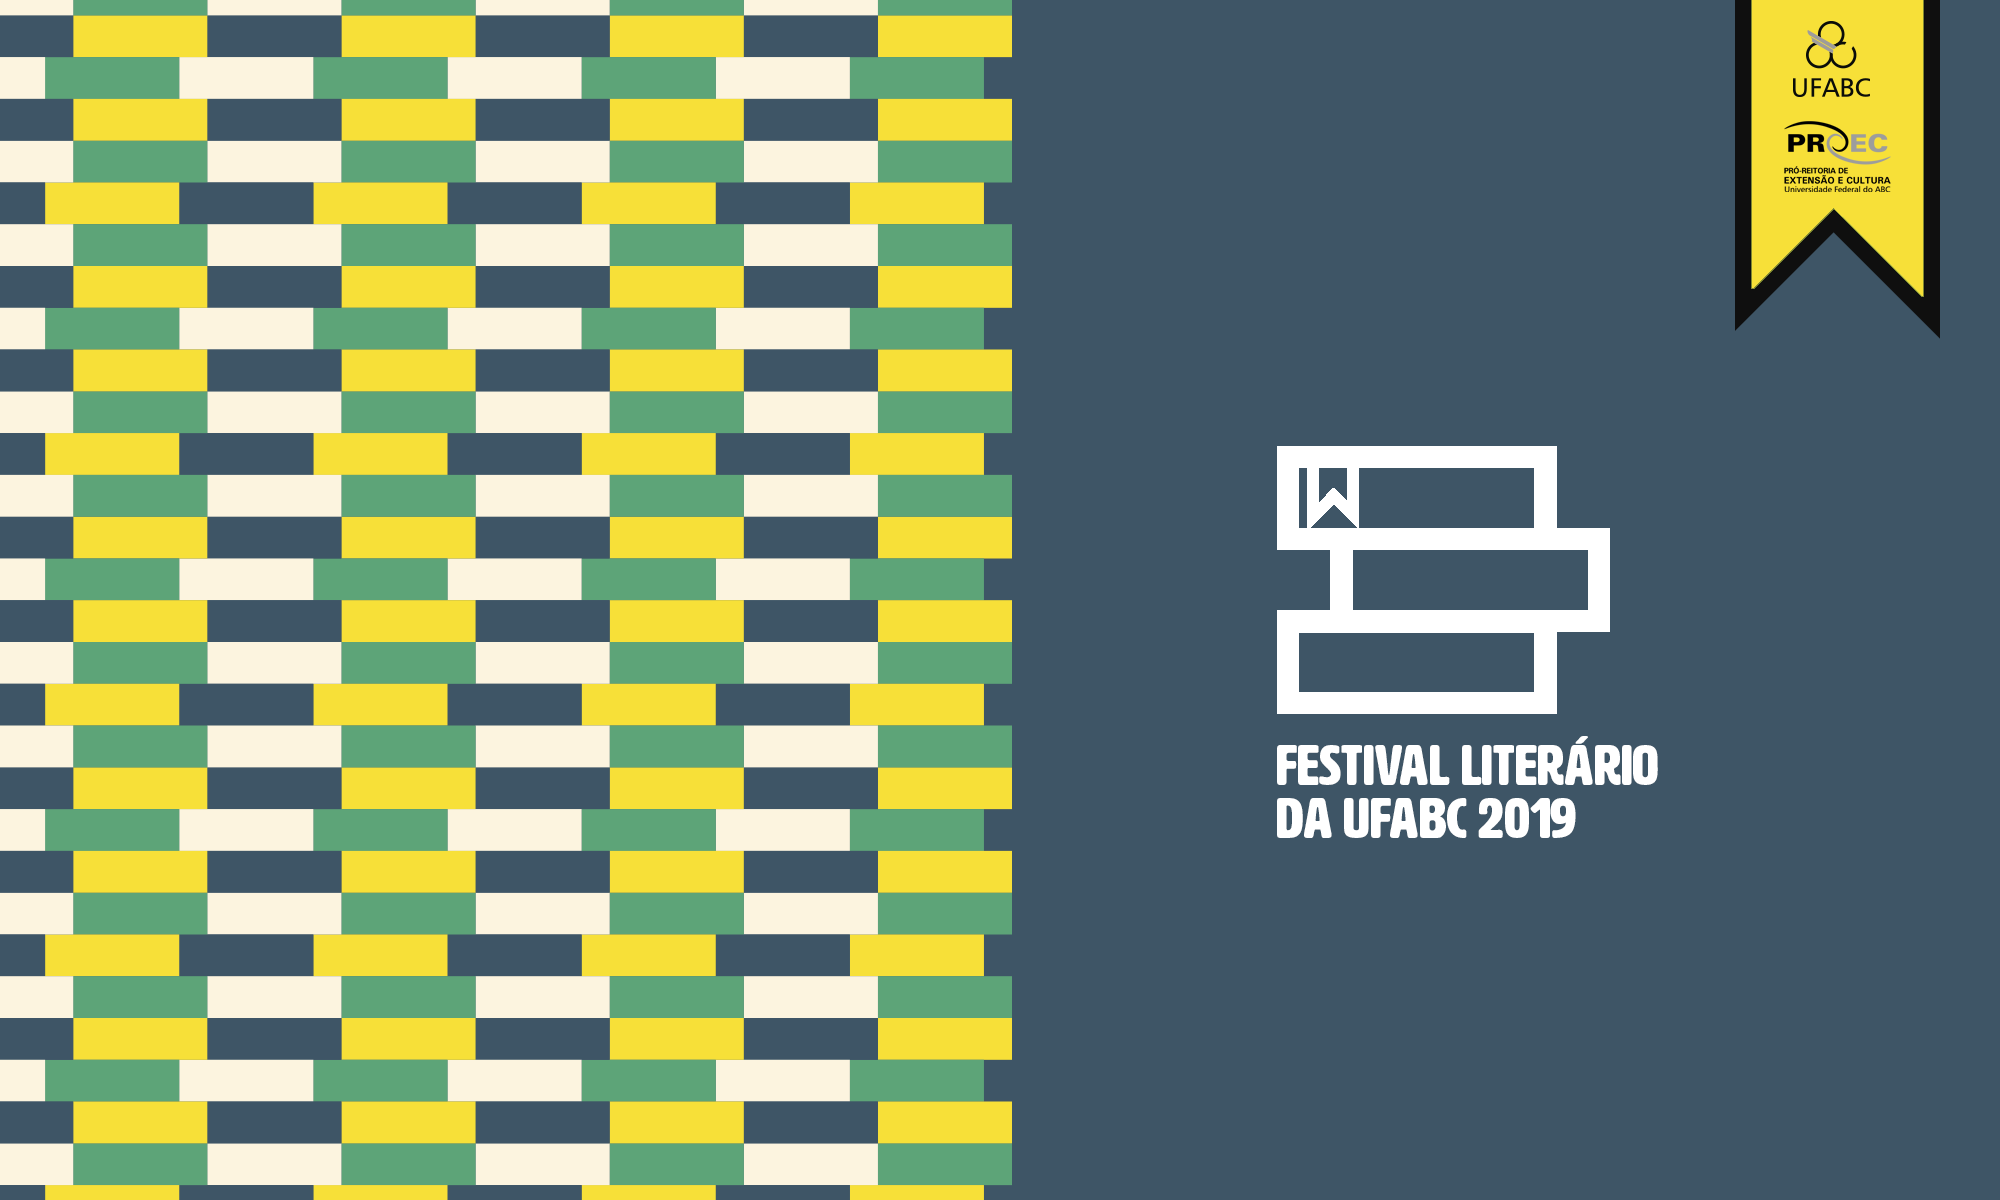 Festival Literário da UFABC 